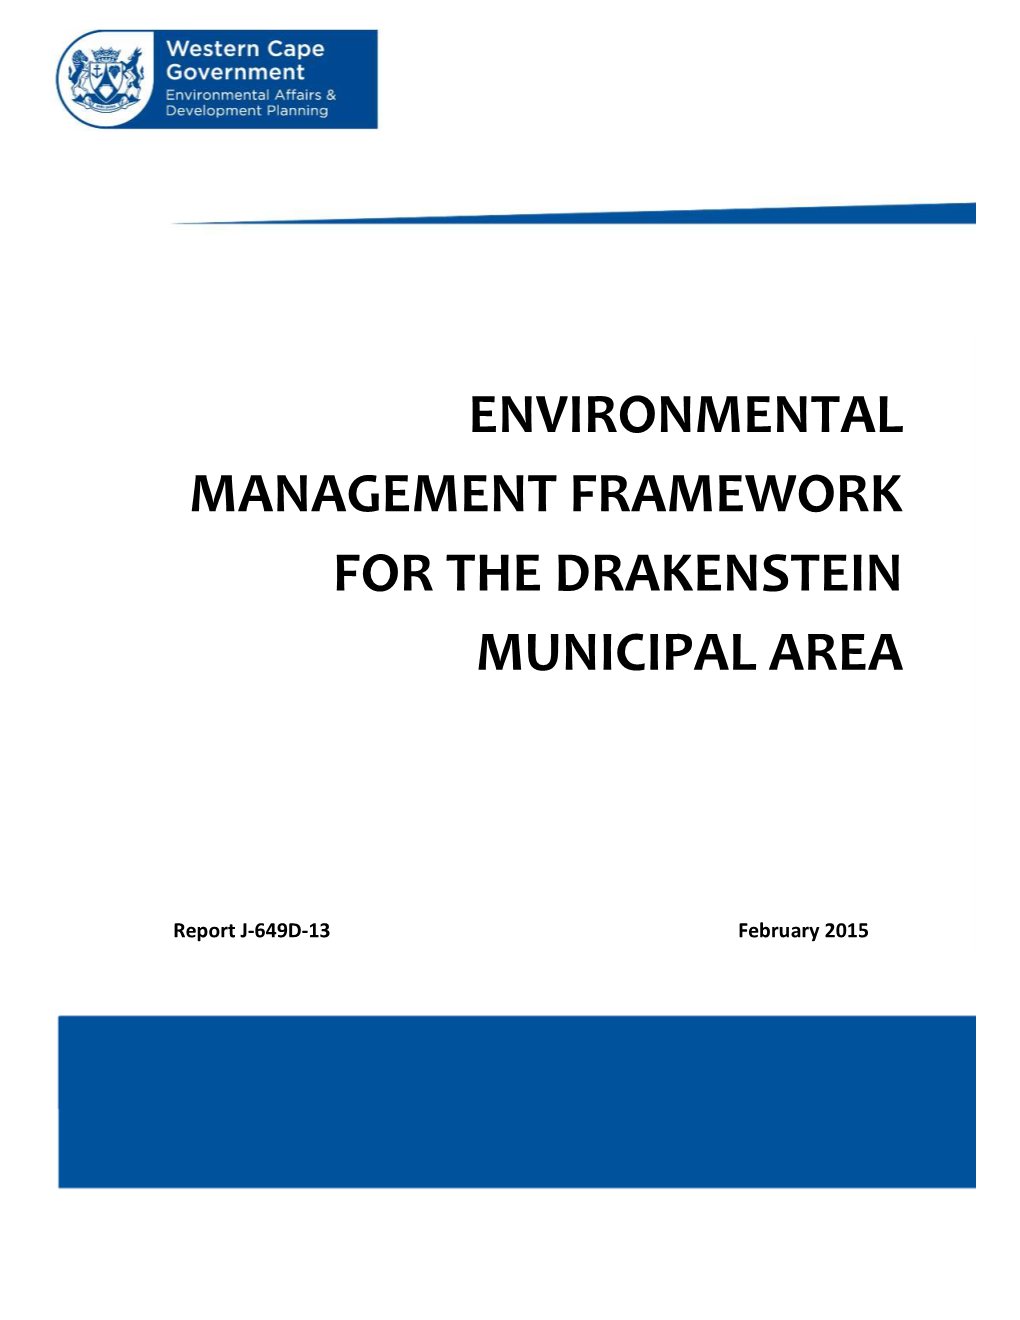 Environmental Management Framework for the Drakenstein Municipal Area